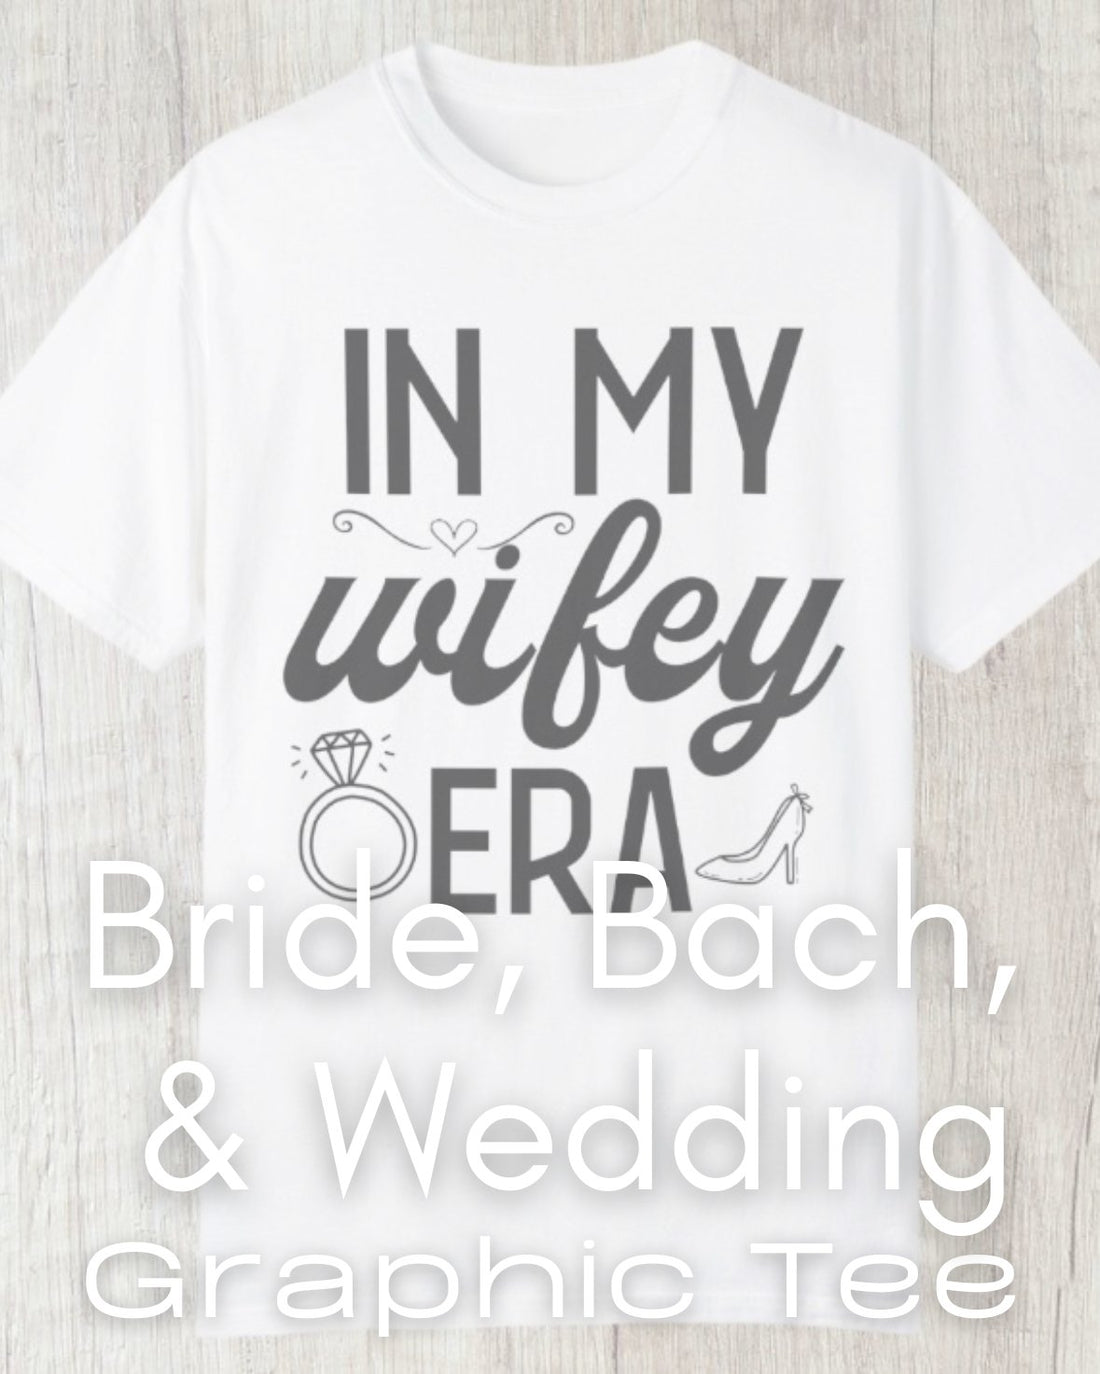  Bride, Bach, & Wedding Graphic Tee